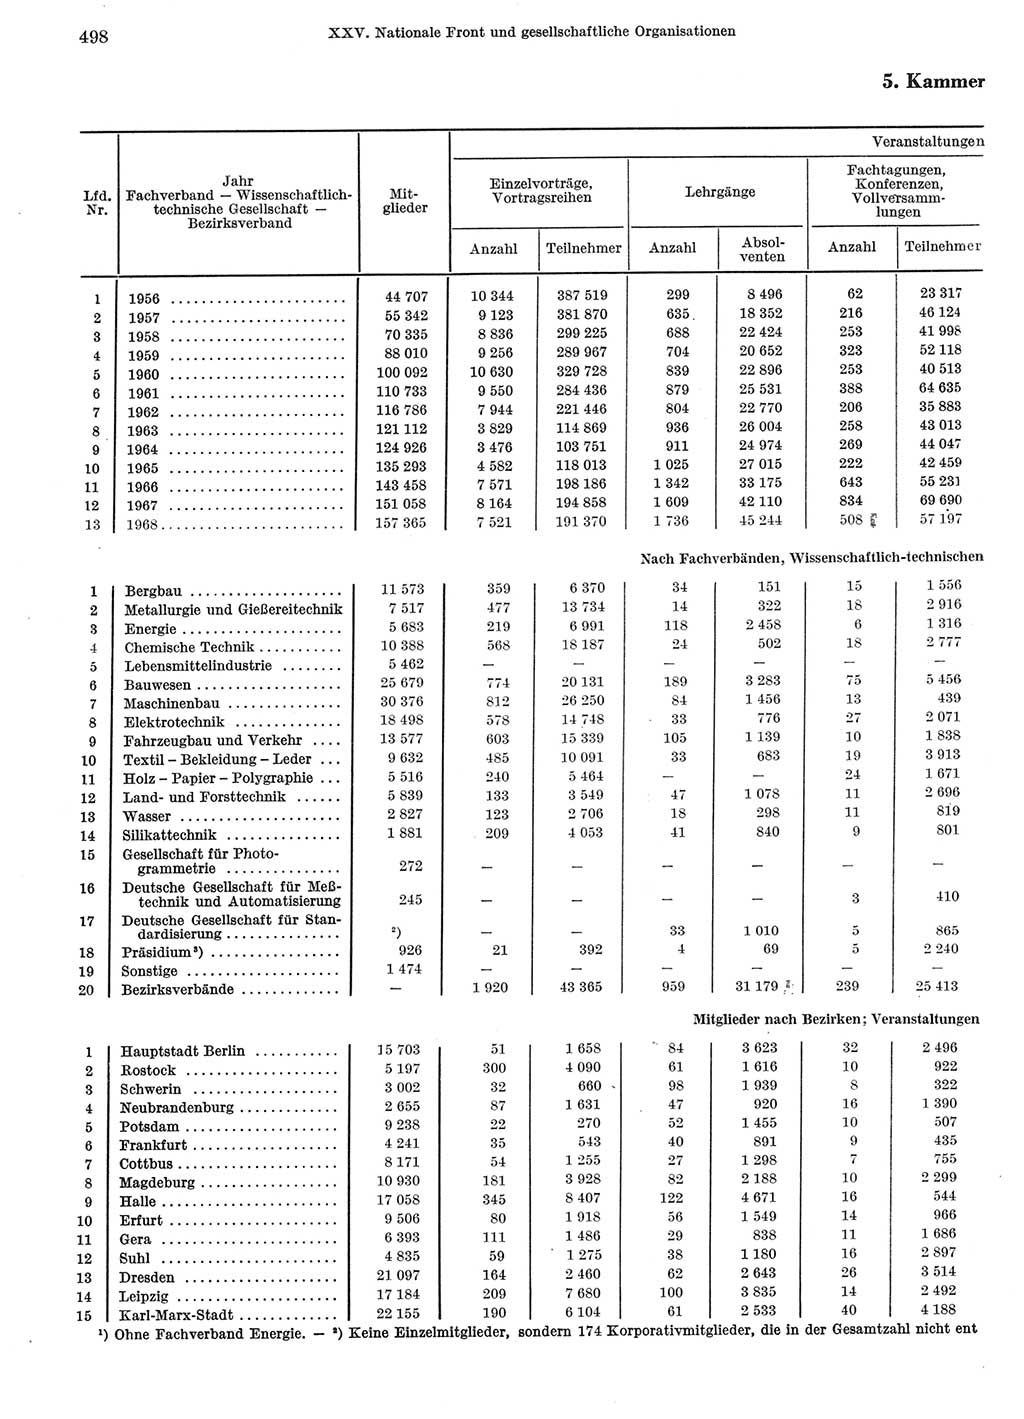 Statistisches Jahrbuch der Deutschen Demokratischen Republik (DDR) 1969, Seite 498 (Stat. Jb. DDR 1969, S. 498)